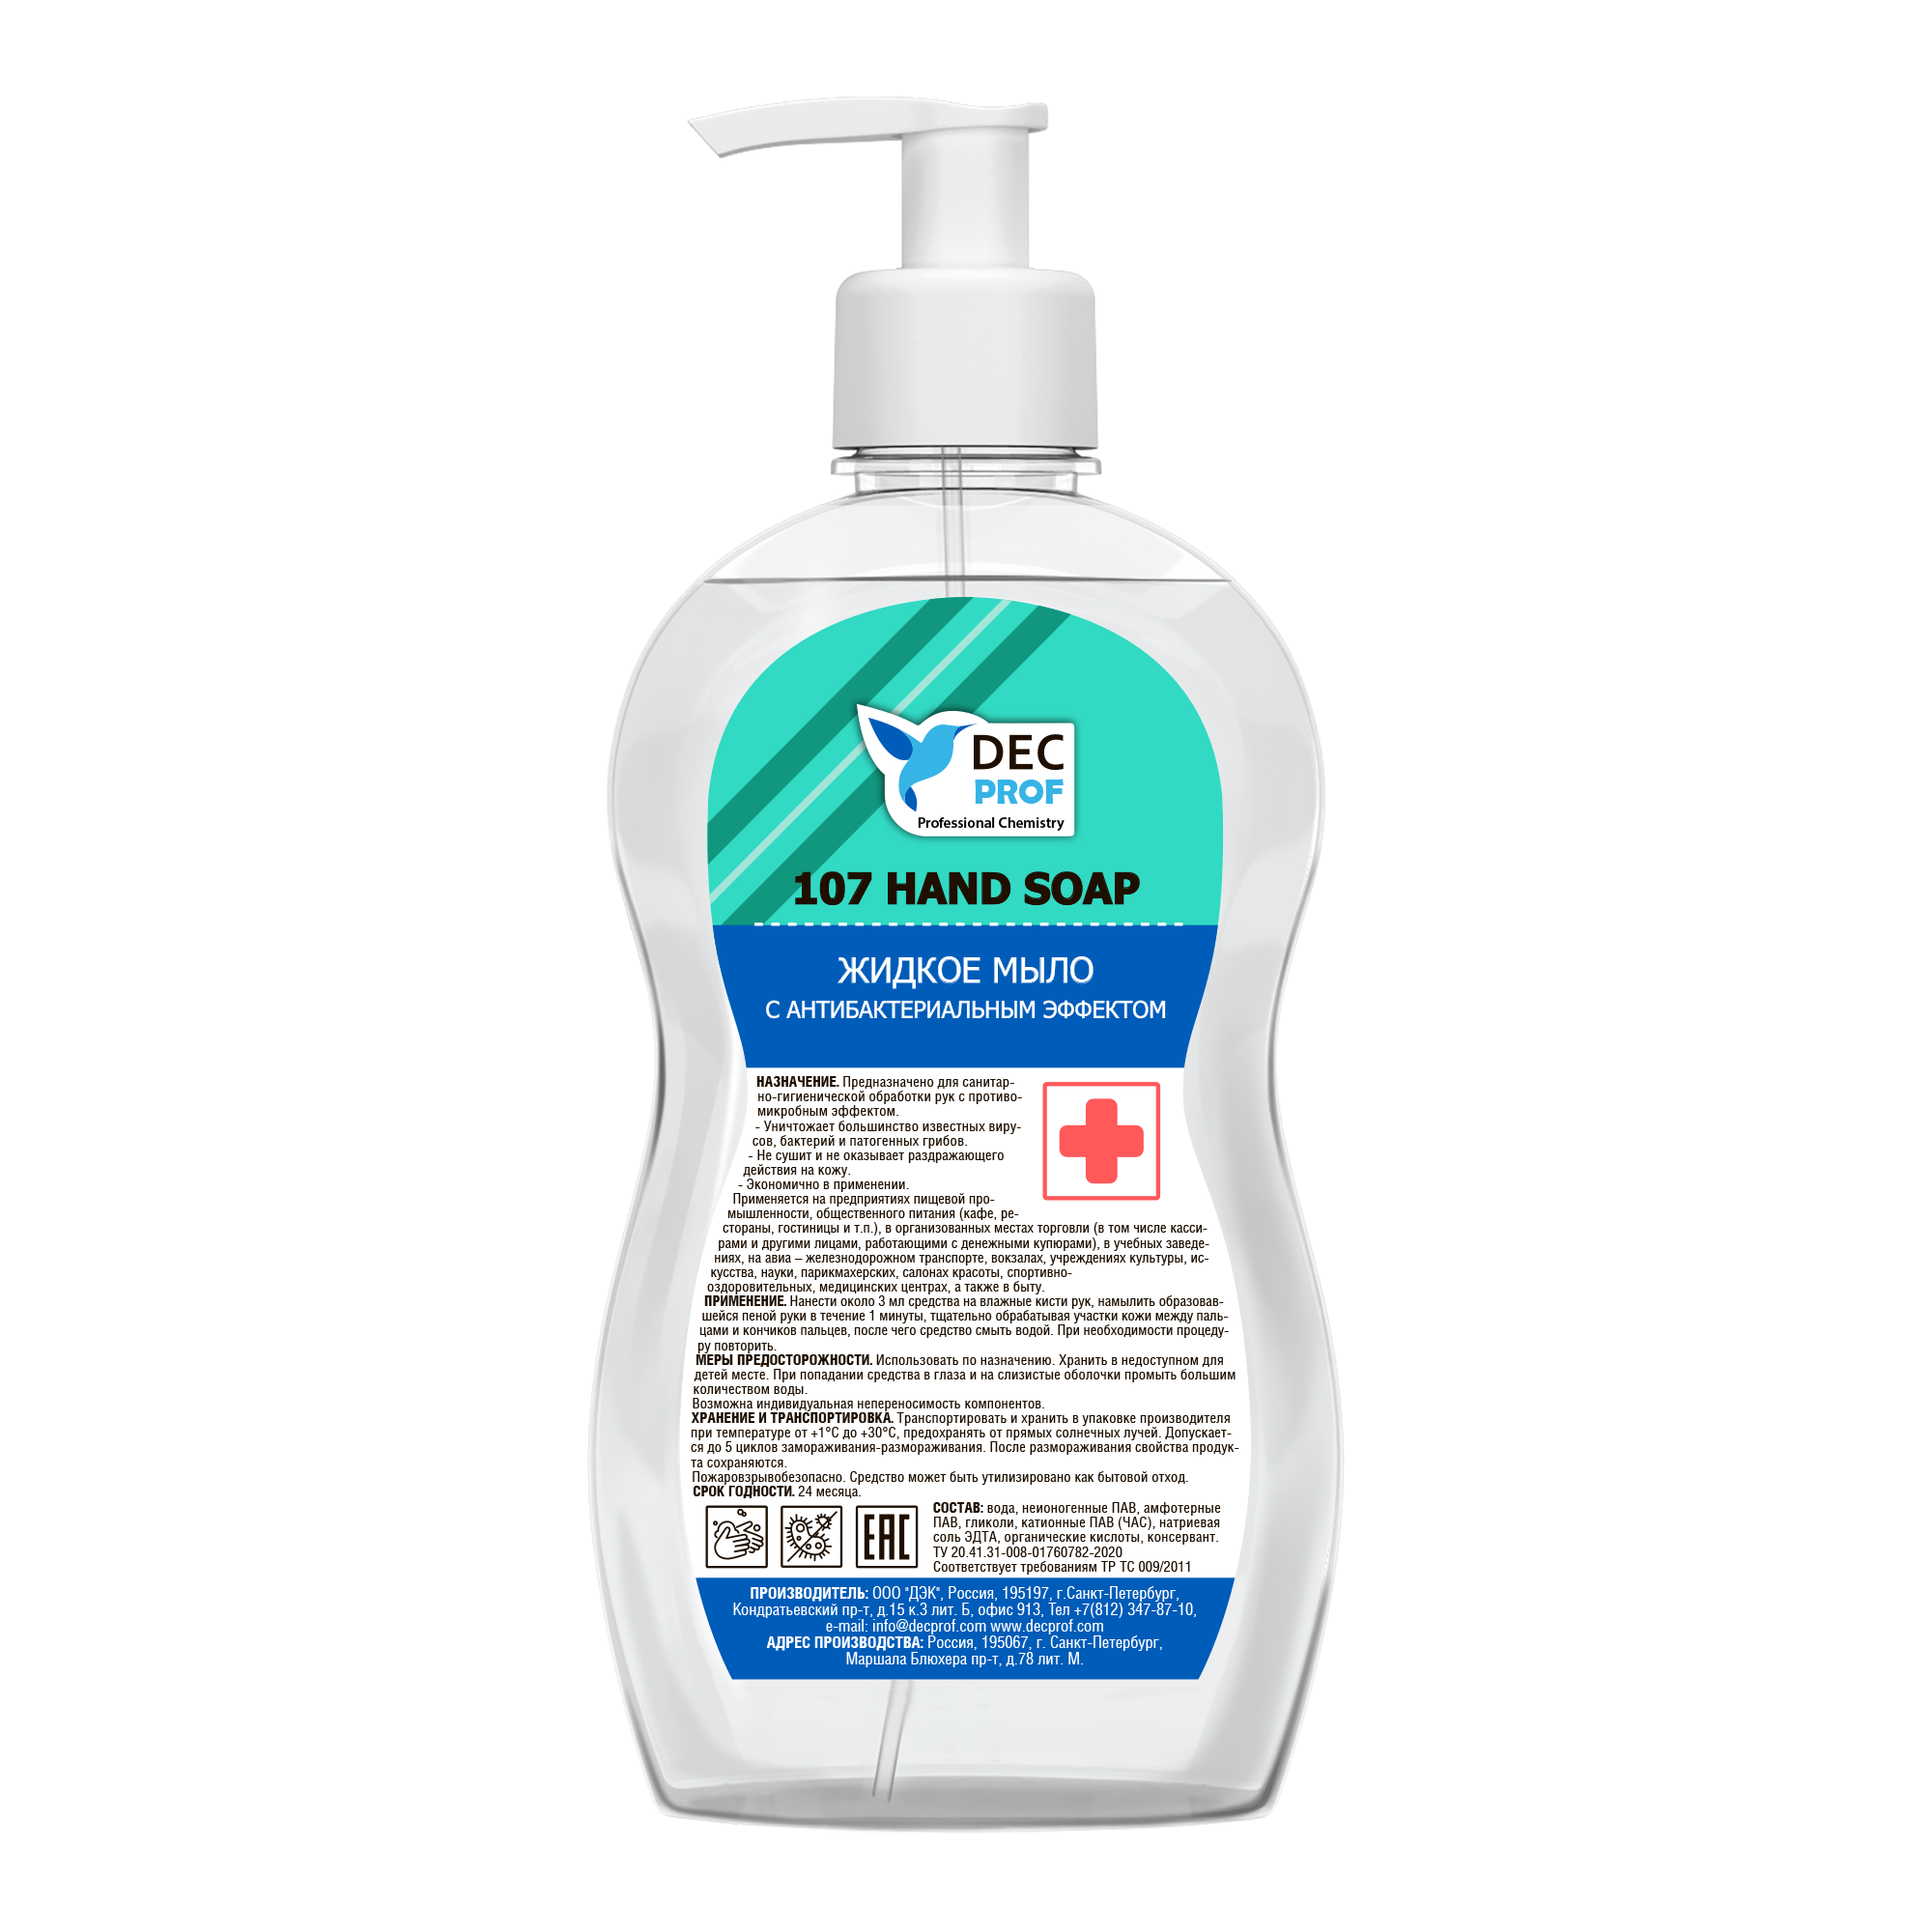 107-05 Жидкое мыло с антибактериальным эффектом на основе ЧАС Dec Prof 107 HAND SOAP - 500 мл